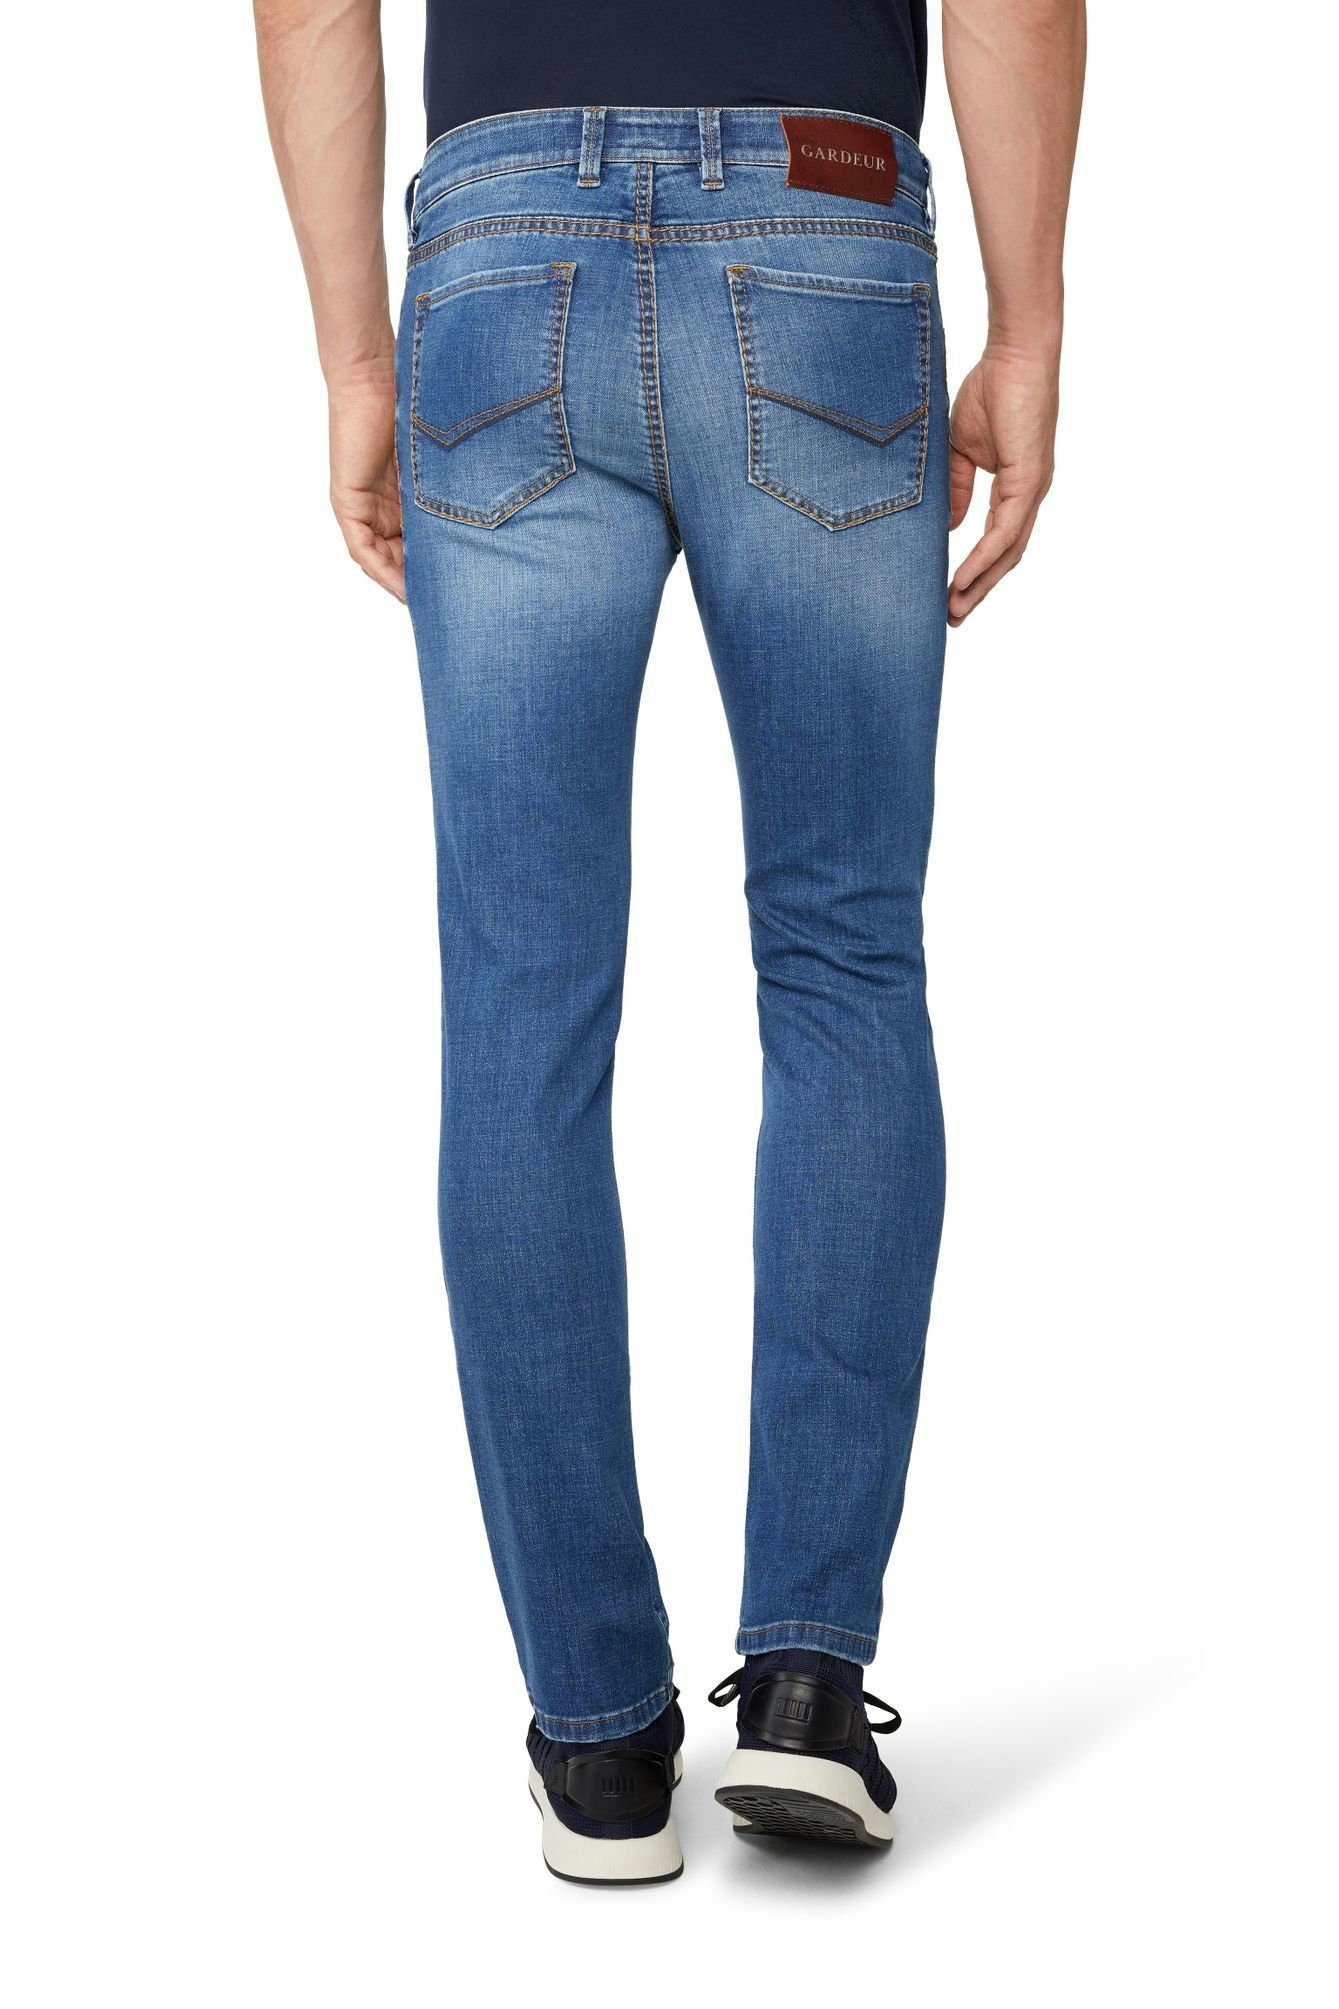 Atelier GARDEUR 5-Pocket-Jeans Bill-24 online kaufen | OTTO